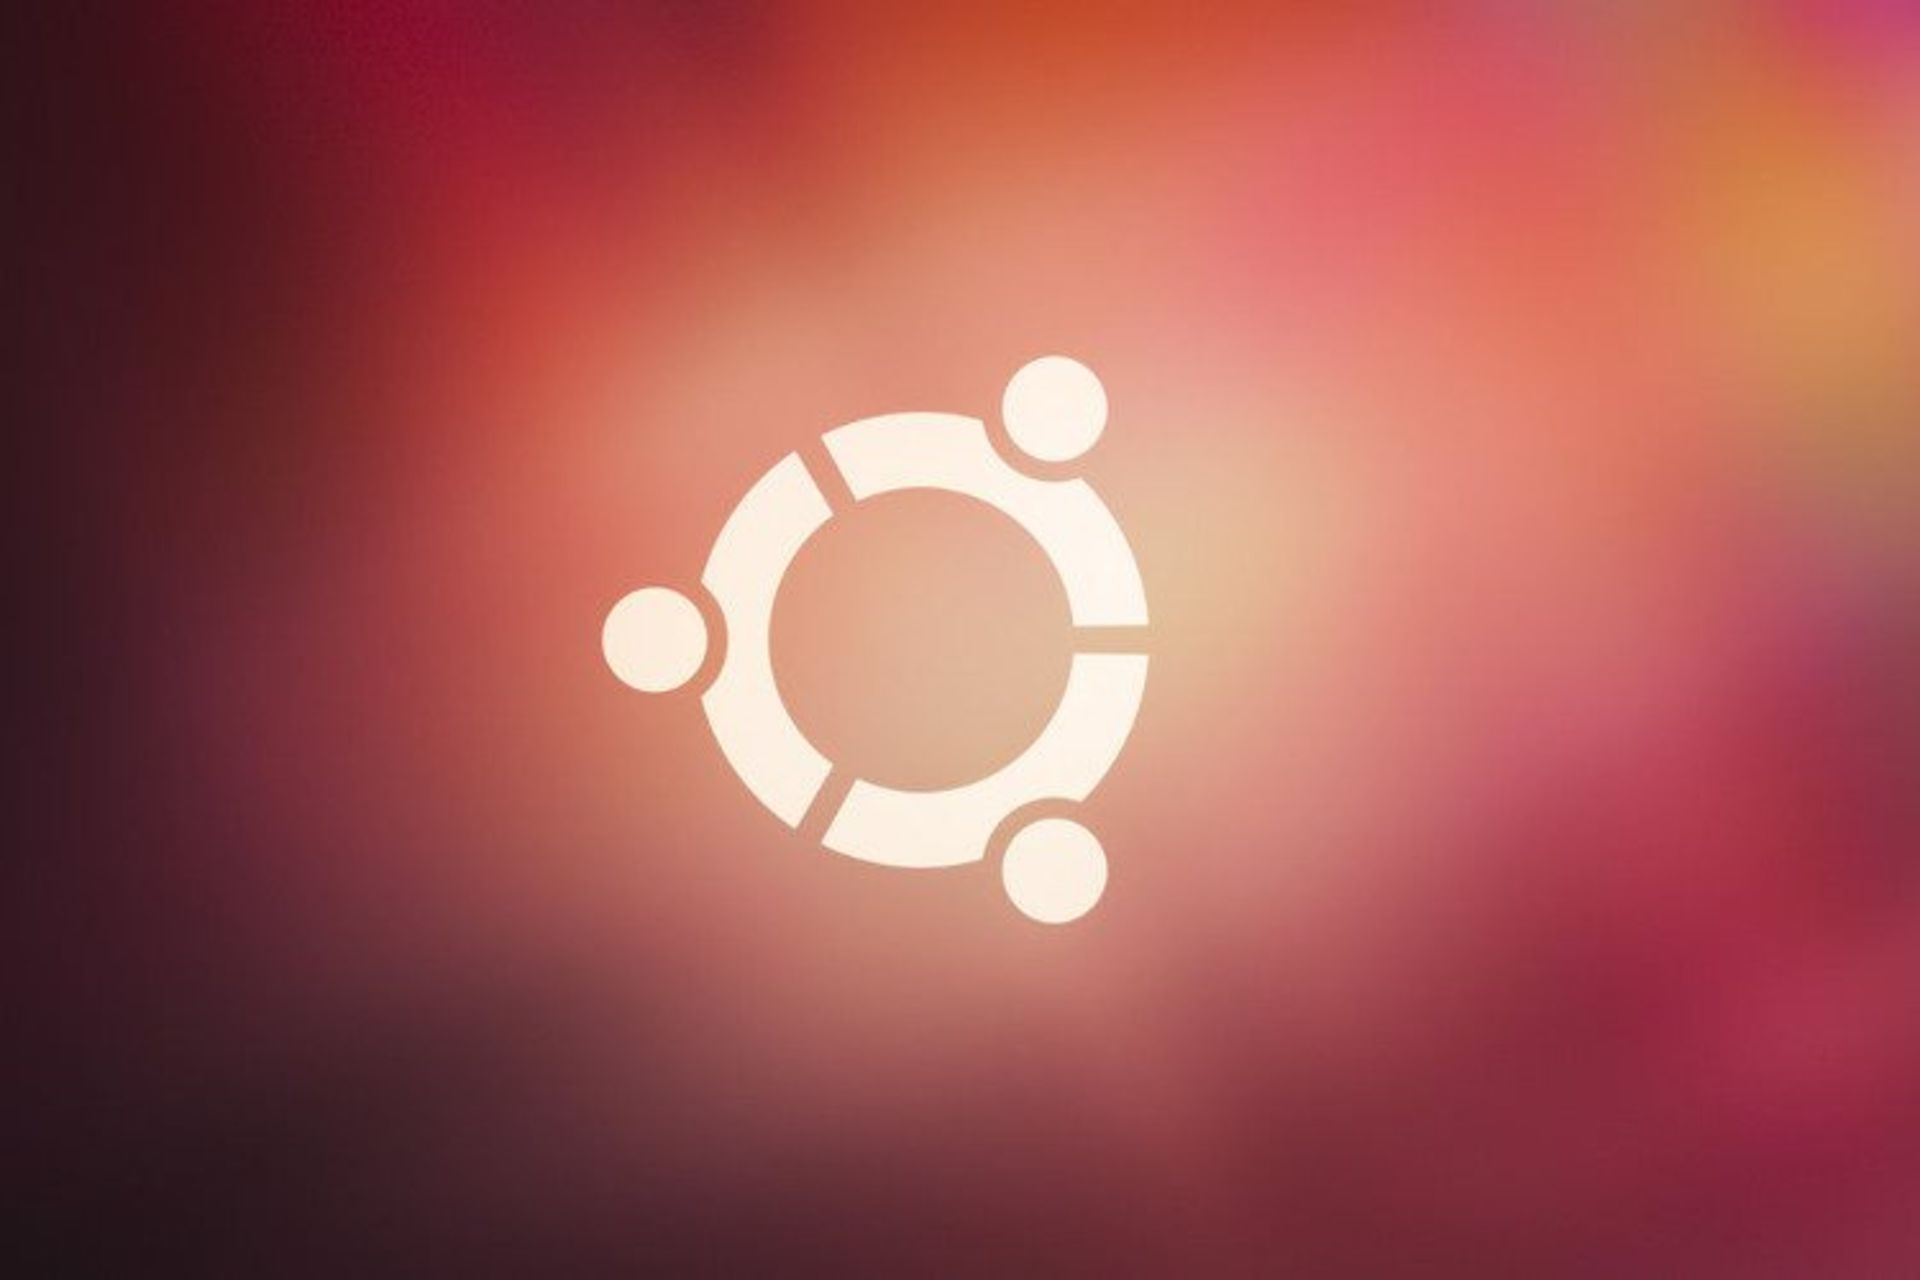 مرجع متخصصين ايران Ubuntu